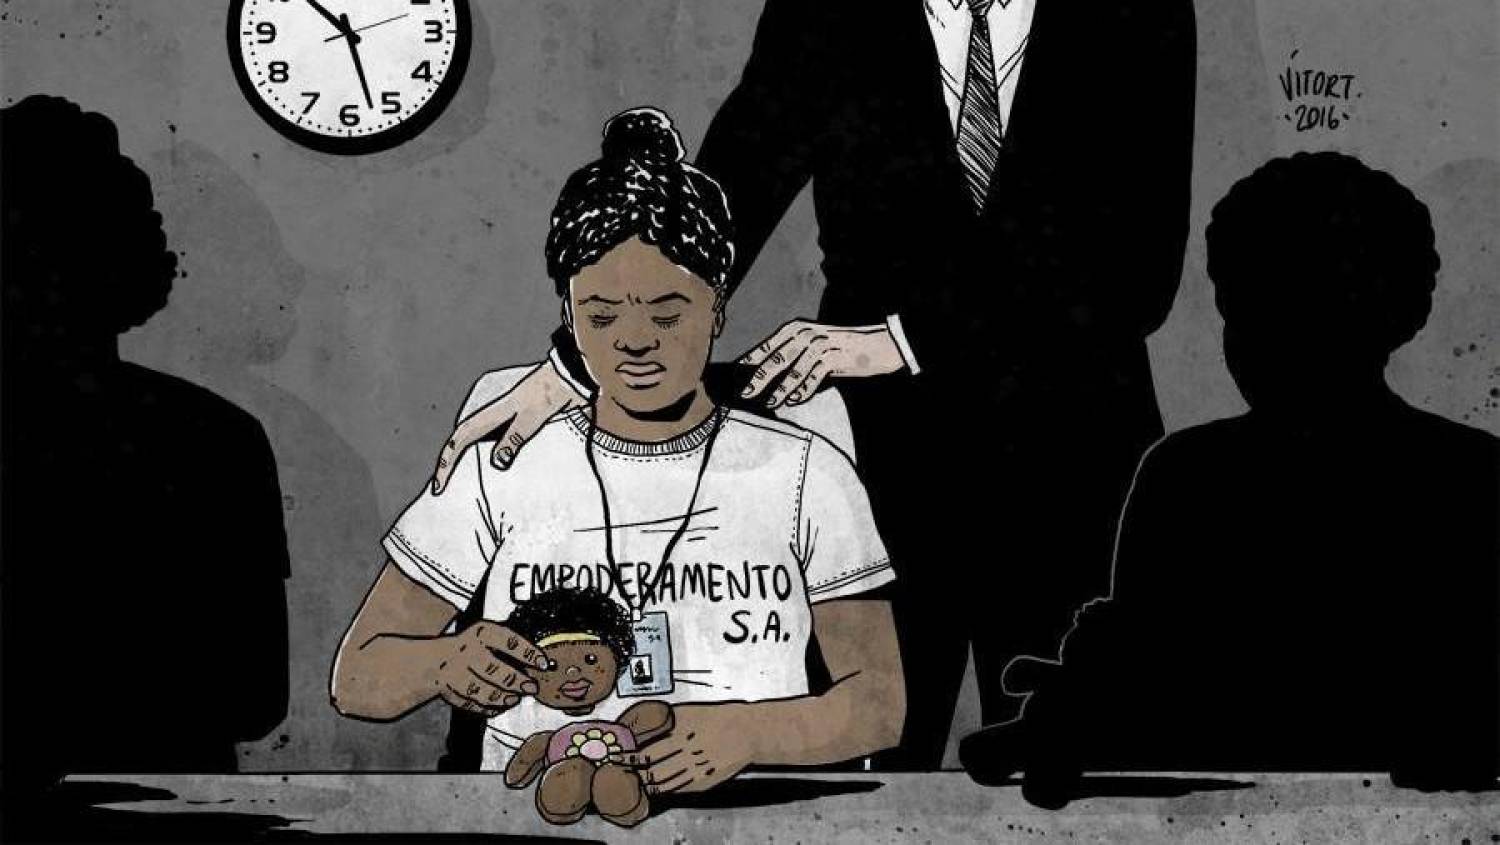 Mulheres negras acumulam piores indicadores sociais no Brasil